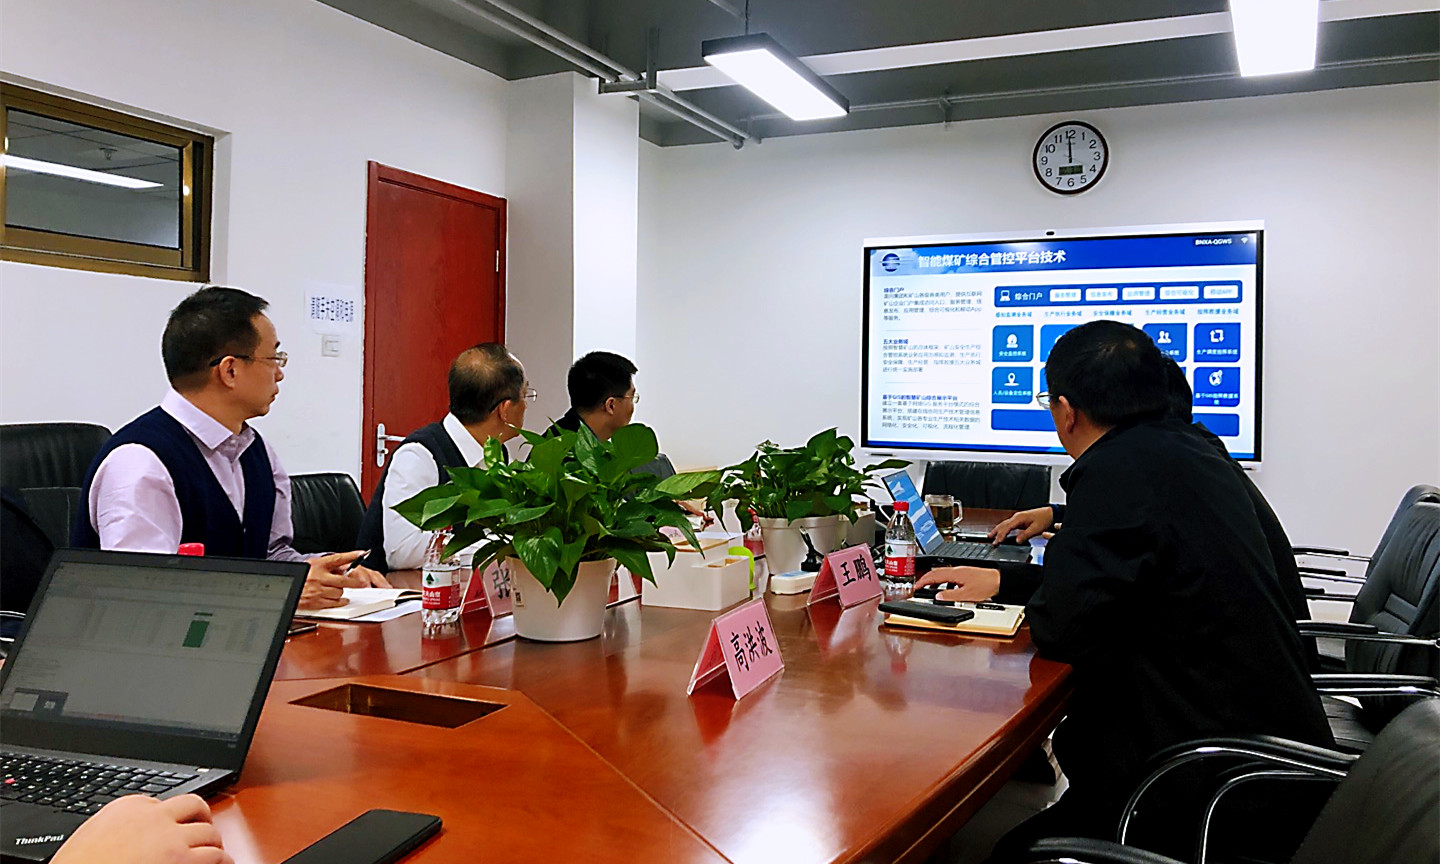 中国矿业大学（北京）机电与信息工程学院张晞院长一行到公司交流座谈